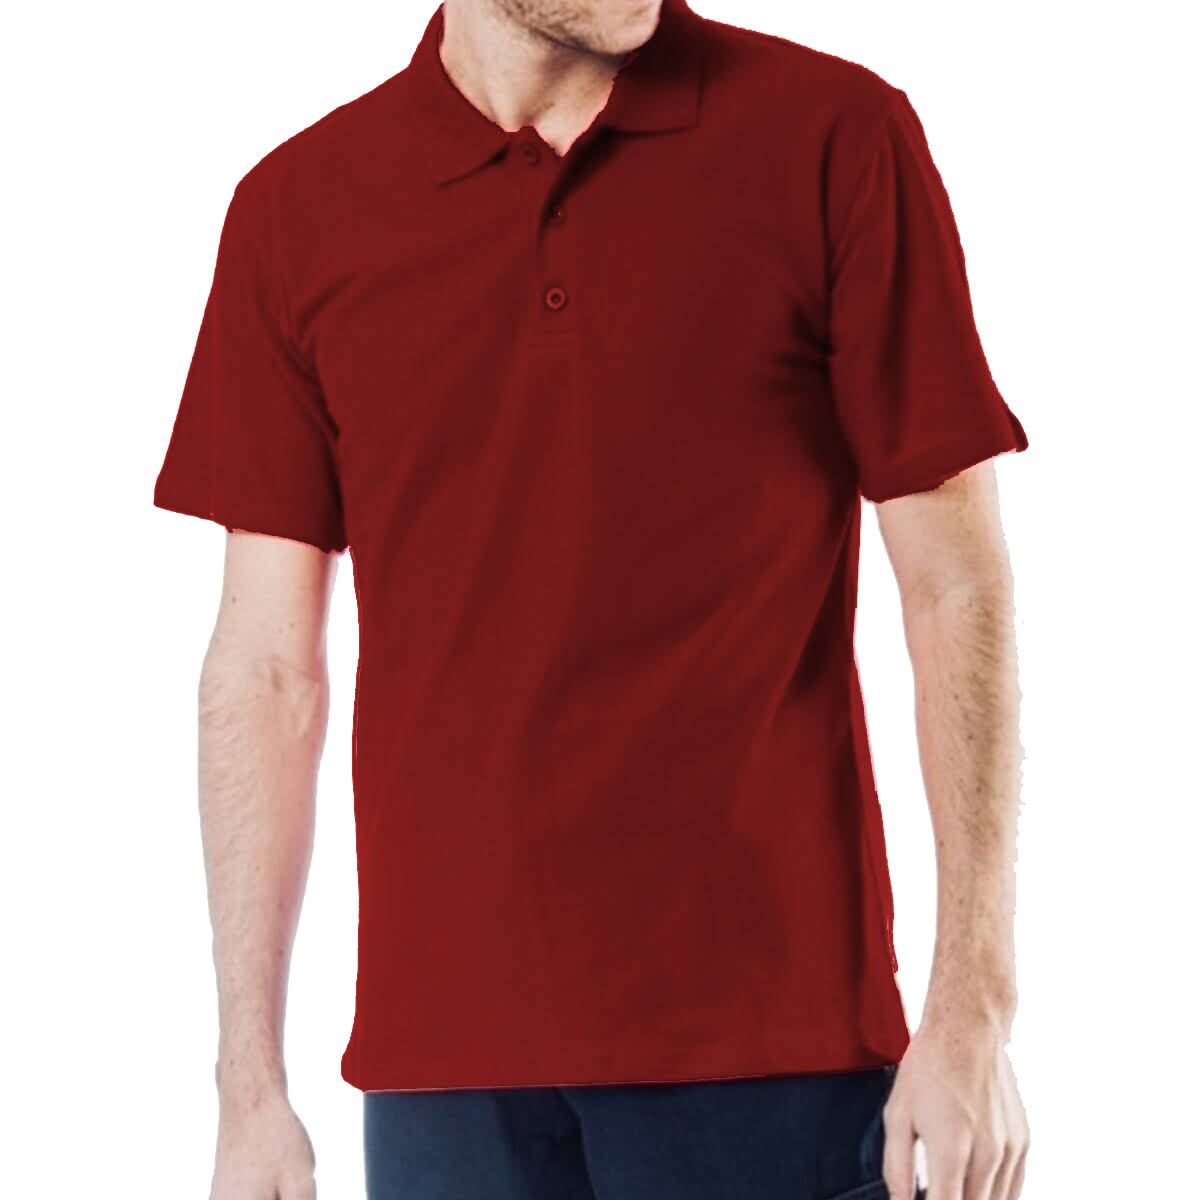 Polo Yaka Tişört Kısa Kollu Personel giyim üç düğmeli opened pike iplikten üretilmiş lakost üst giyim